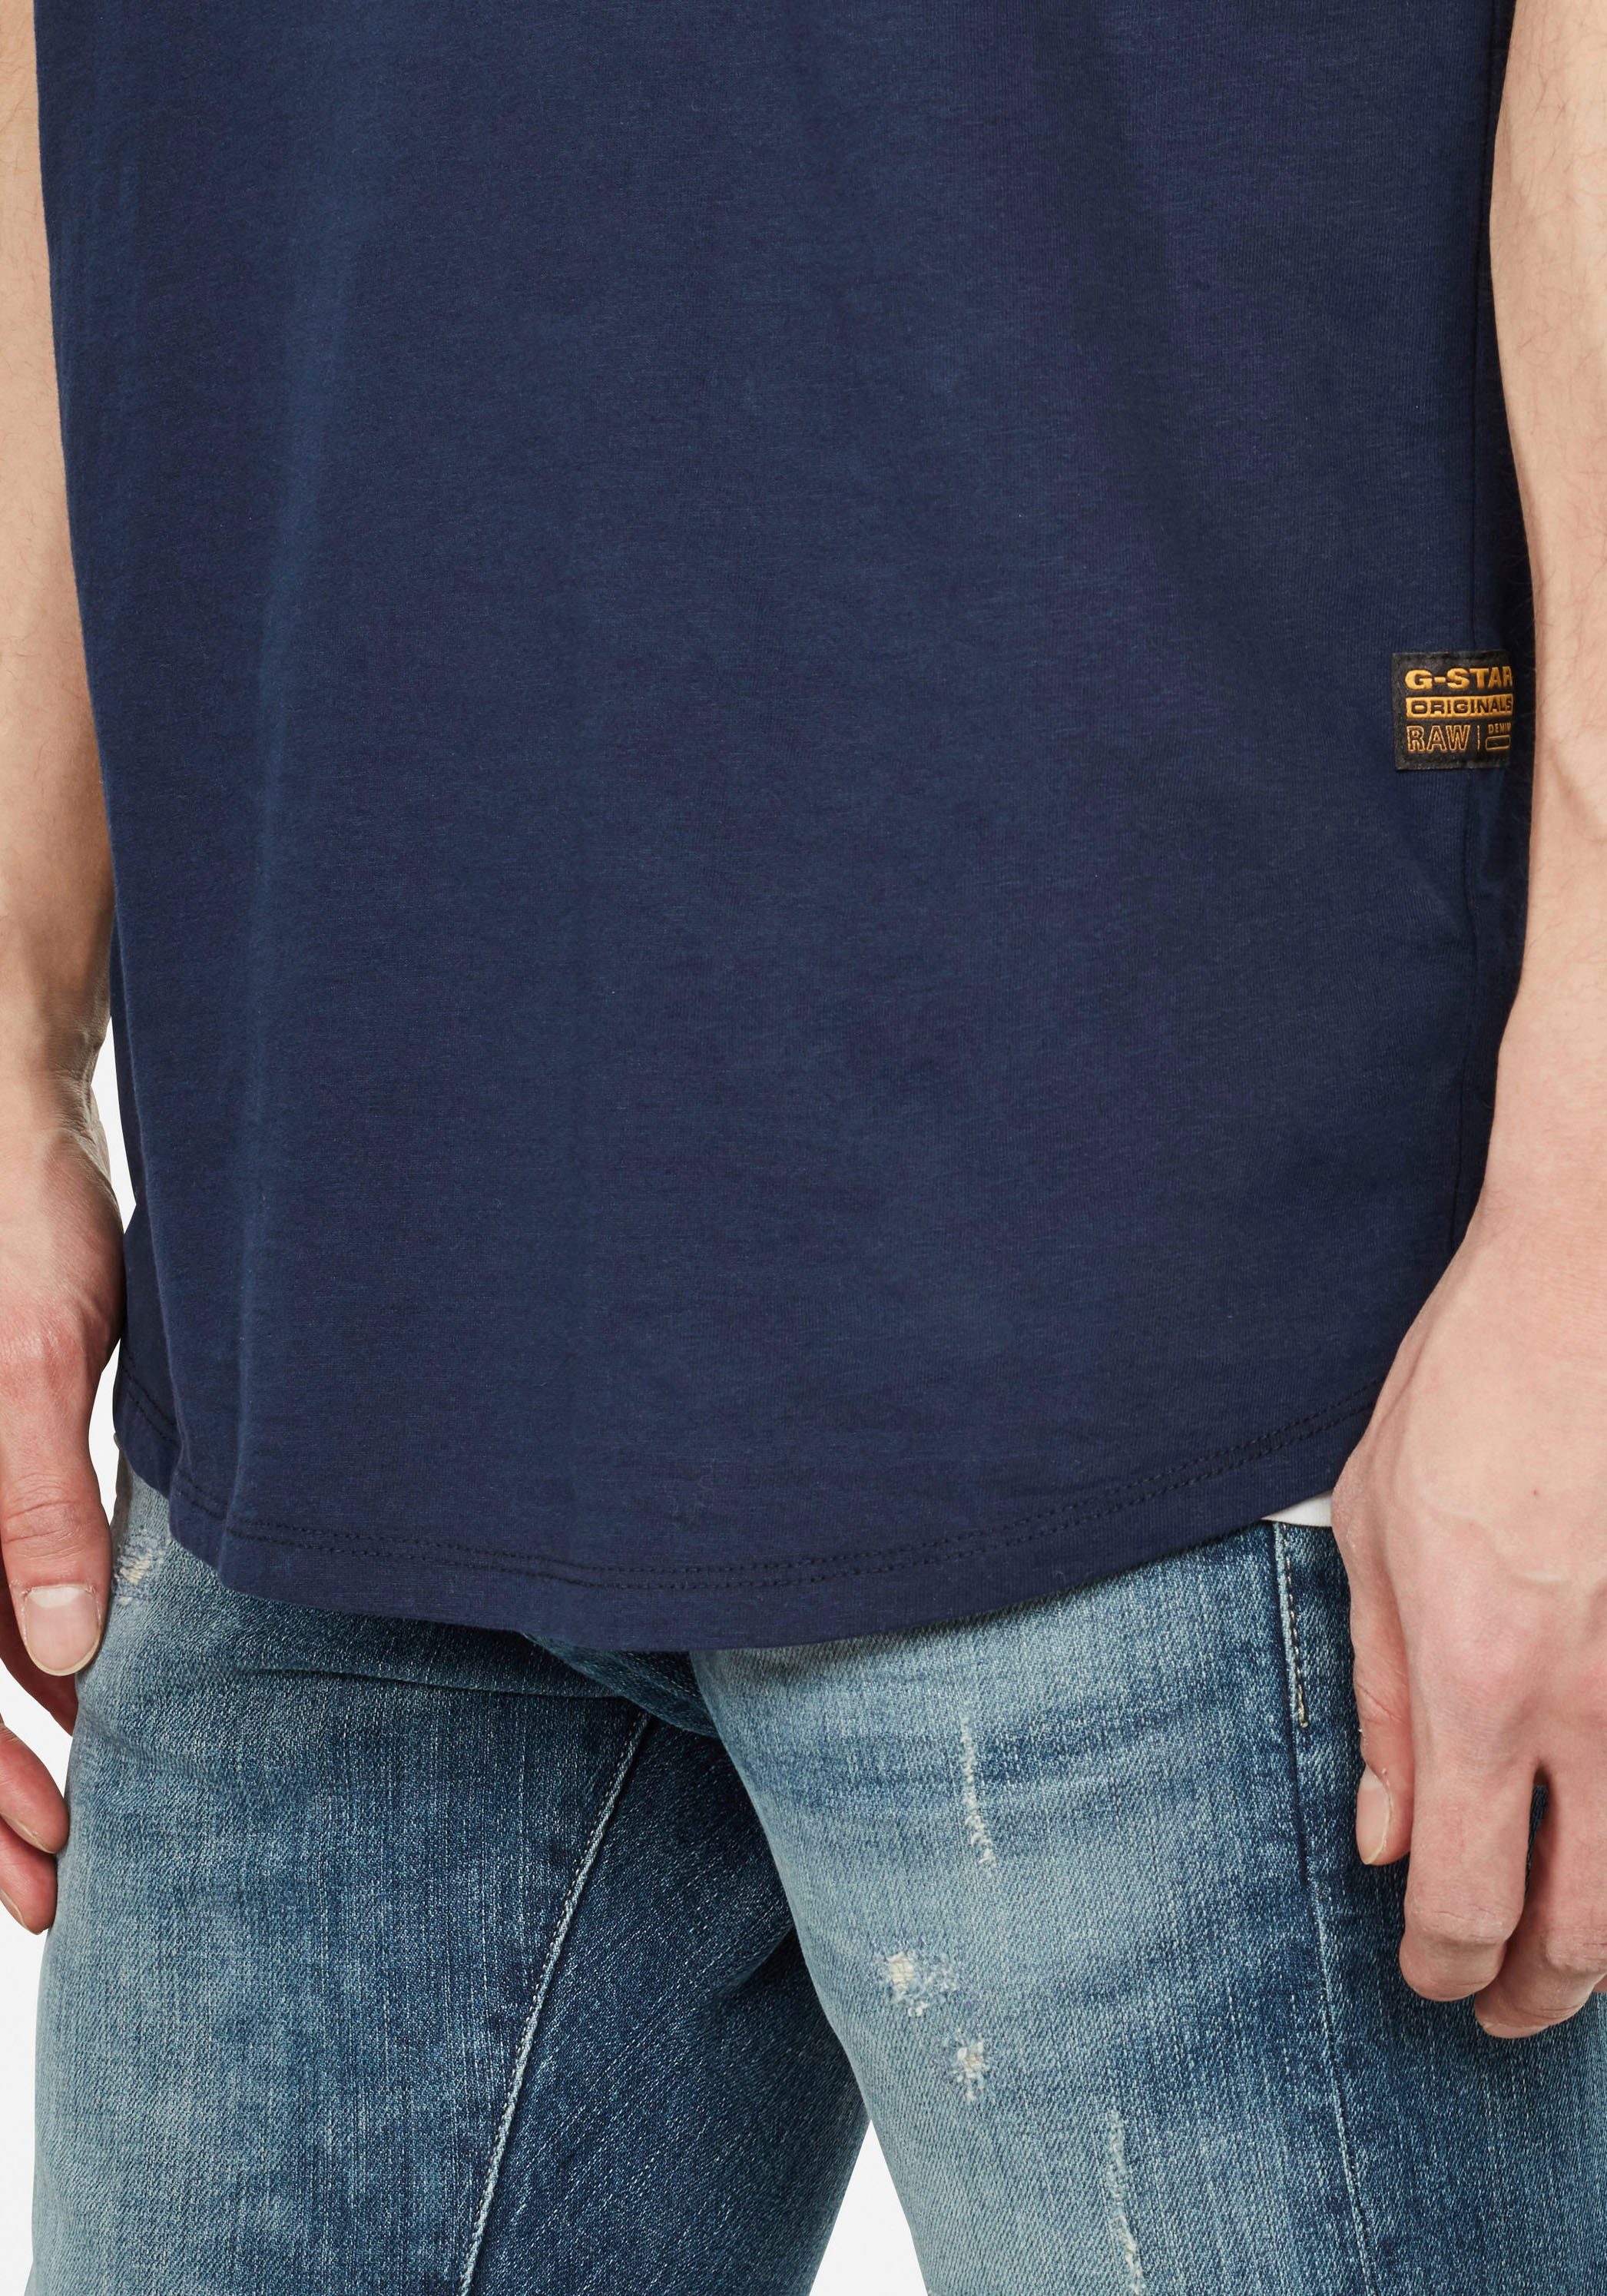 RAW Logo T-Shirt kleinem Lash G-Star Stitching navy-meliert mit